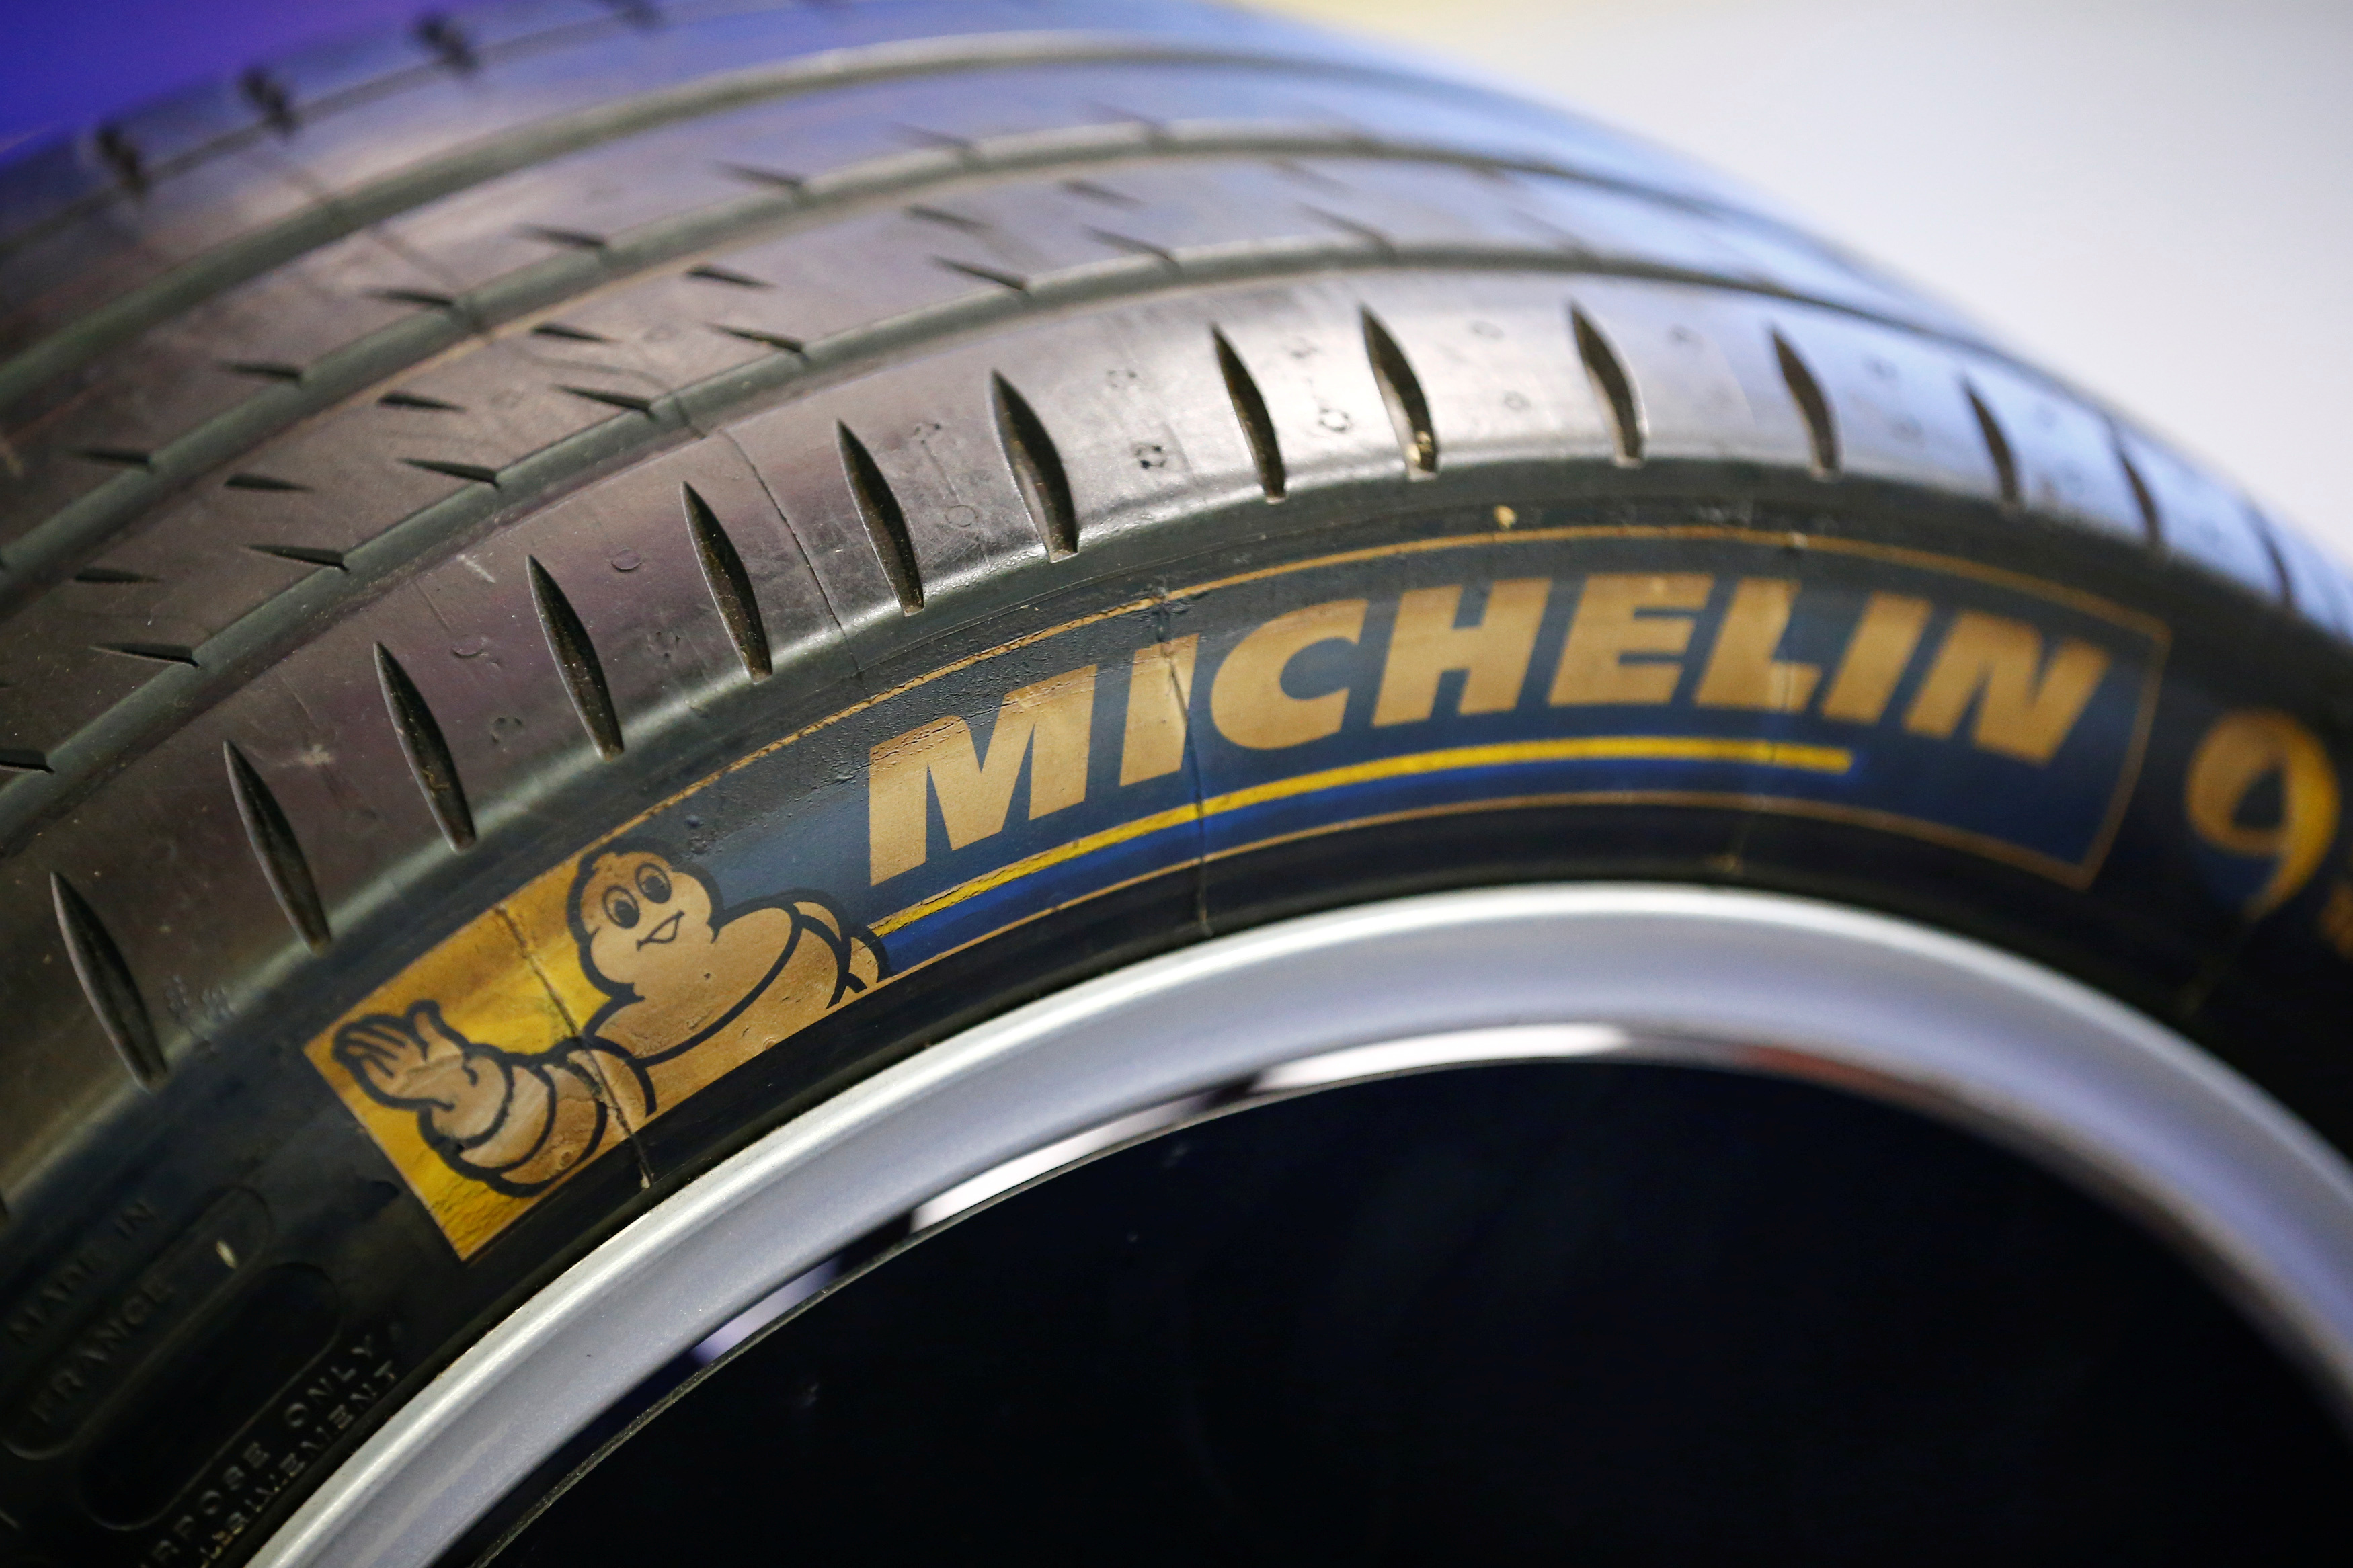 Michelin quitte définitivement la Russie, mais limite l'impact sur ses comptes